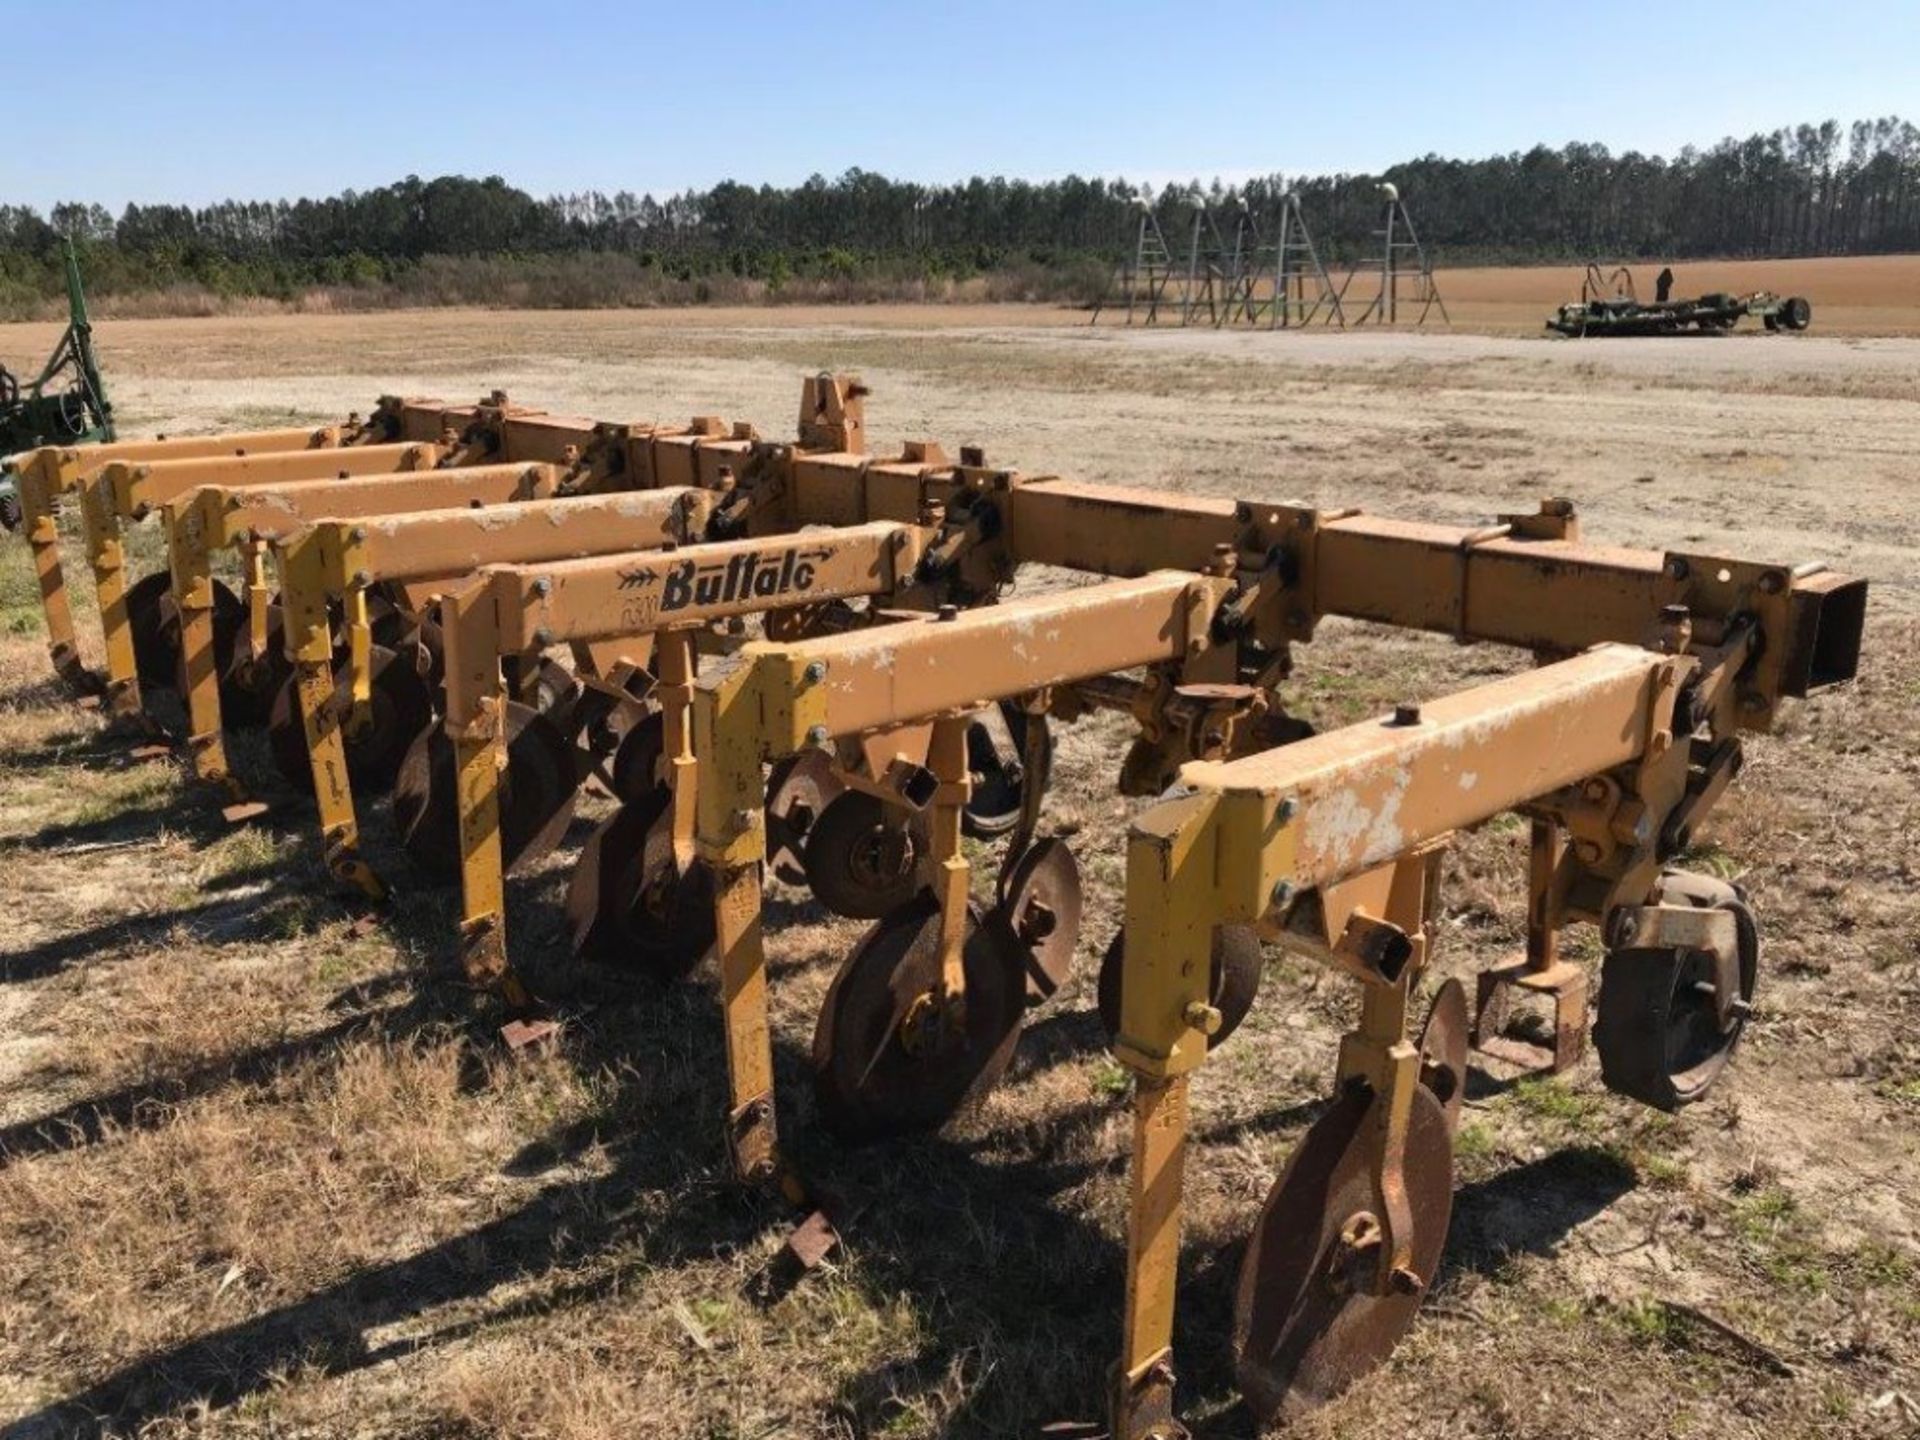 Buffalo plow # 1, Row crop cultivators #1